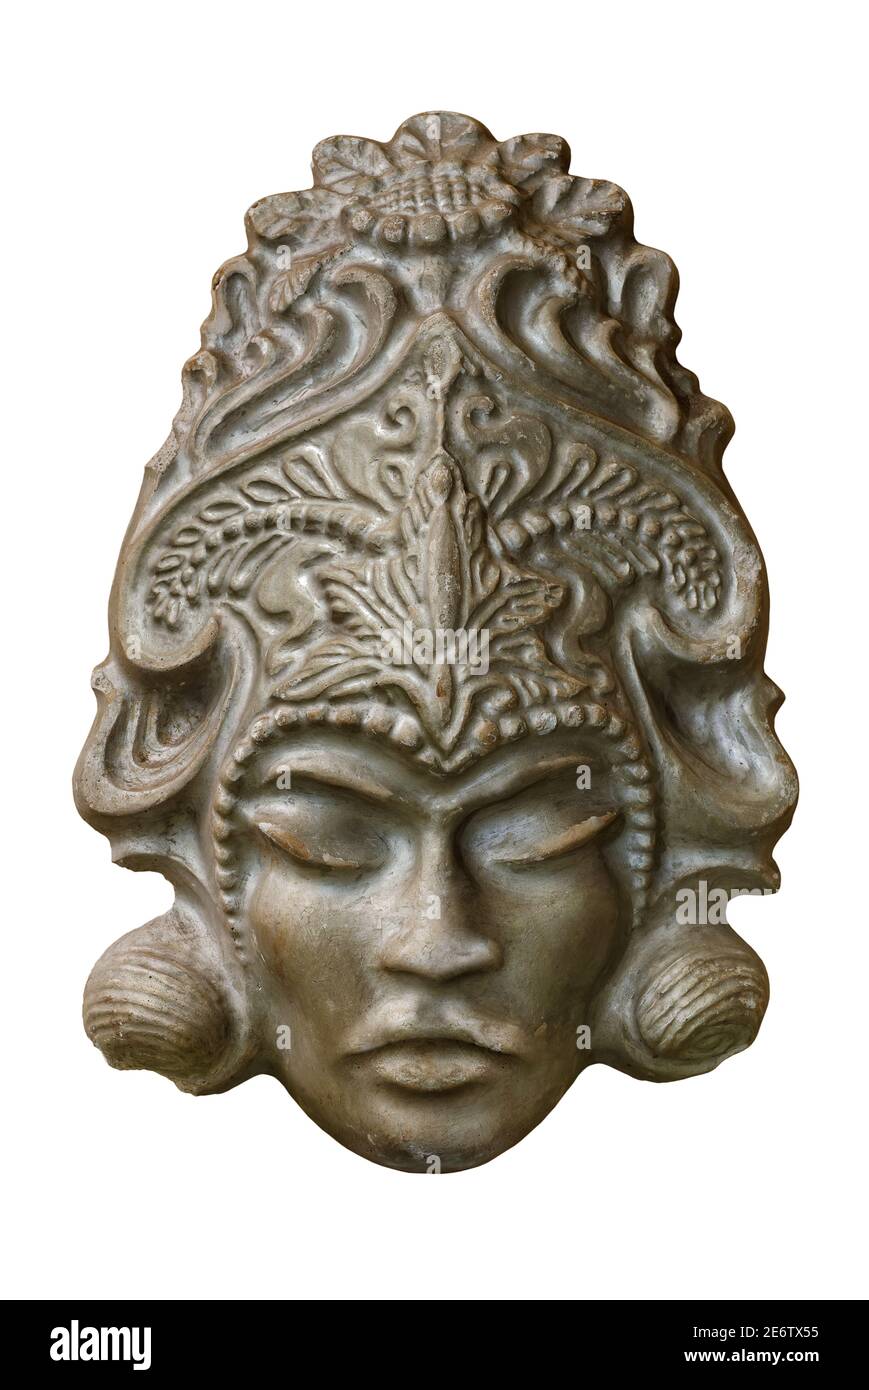 Masque souvenir, portrait du visage de la déesse asiatique générique, produit artisanal traditionnel, isolé sur fond blanc Banque D'Images